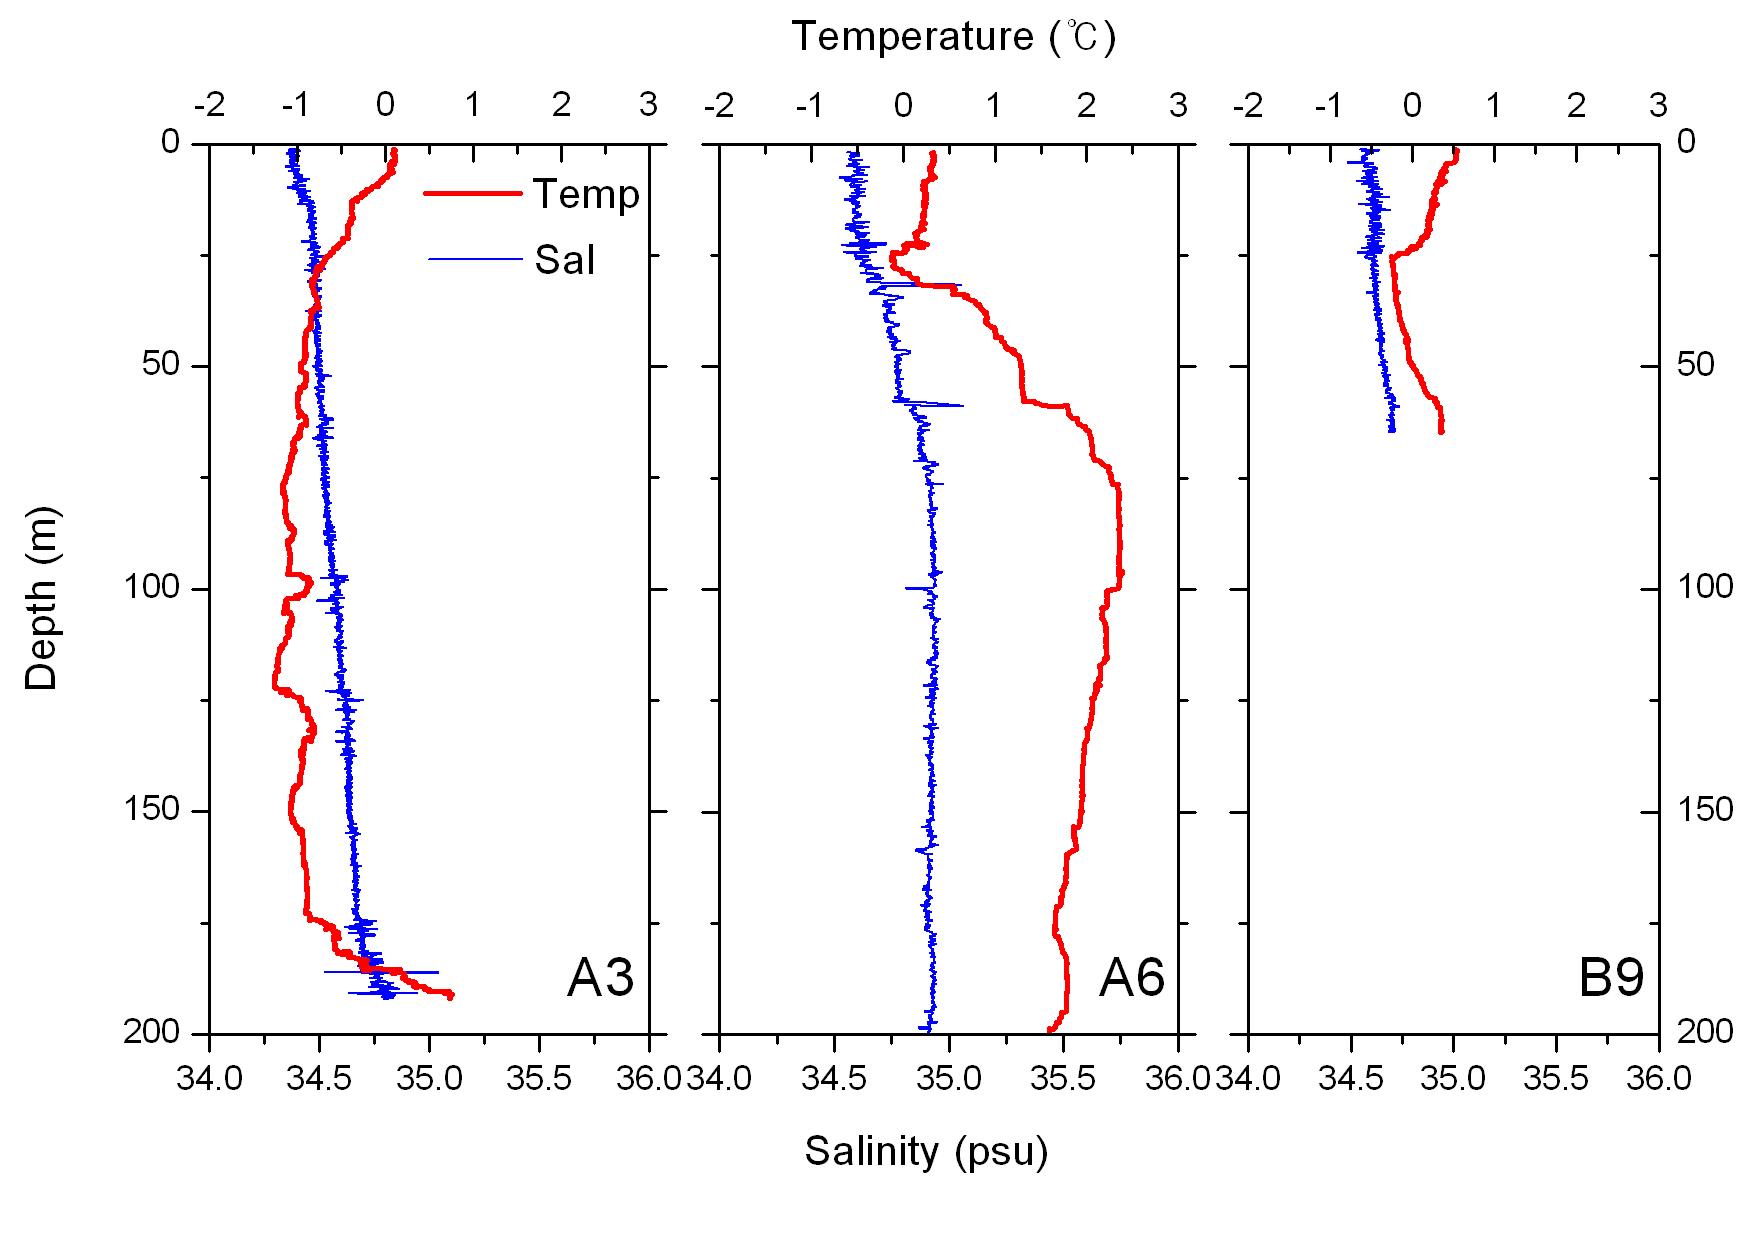 만 내부(A3), 중간(A6) 그리고 외부(B9)정점에서 수온과 염분의 수직 분포양상